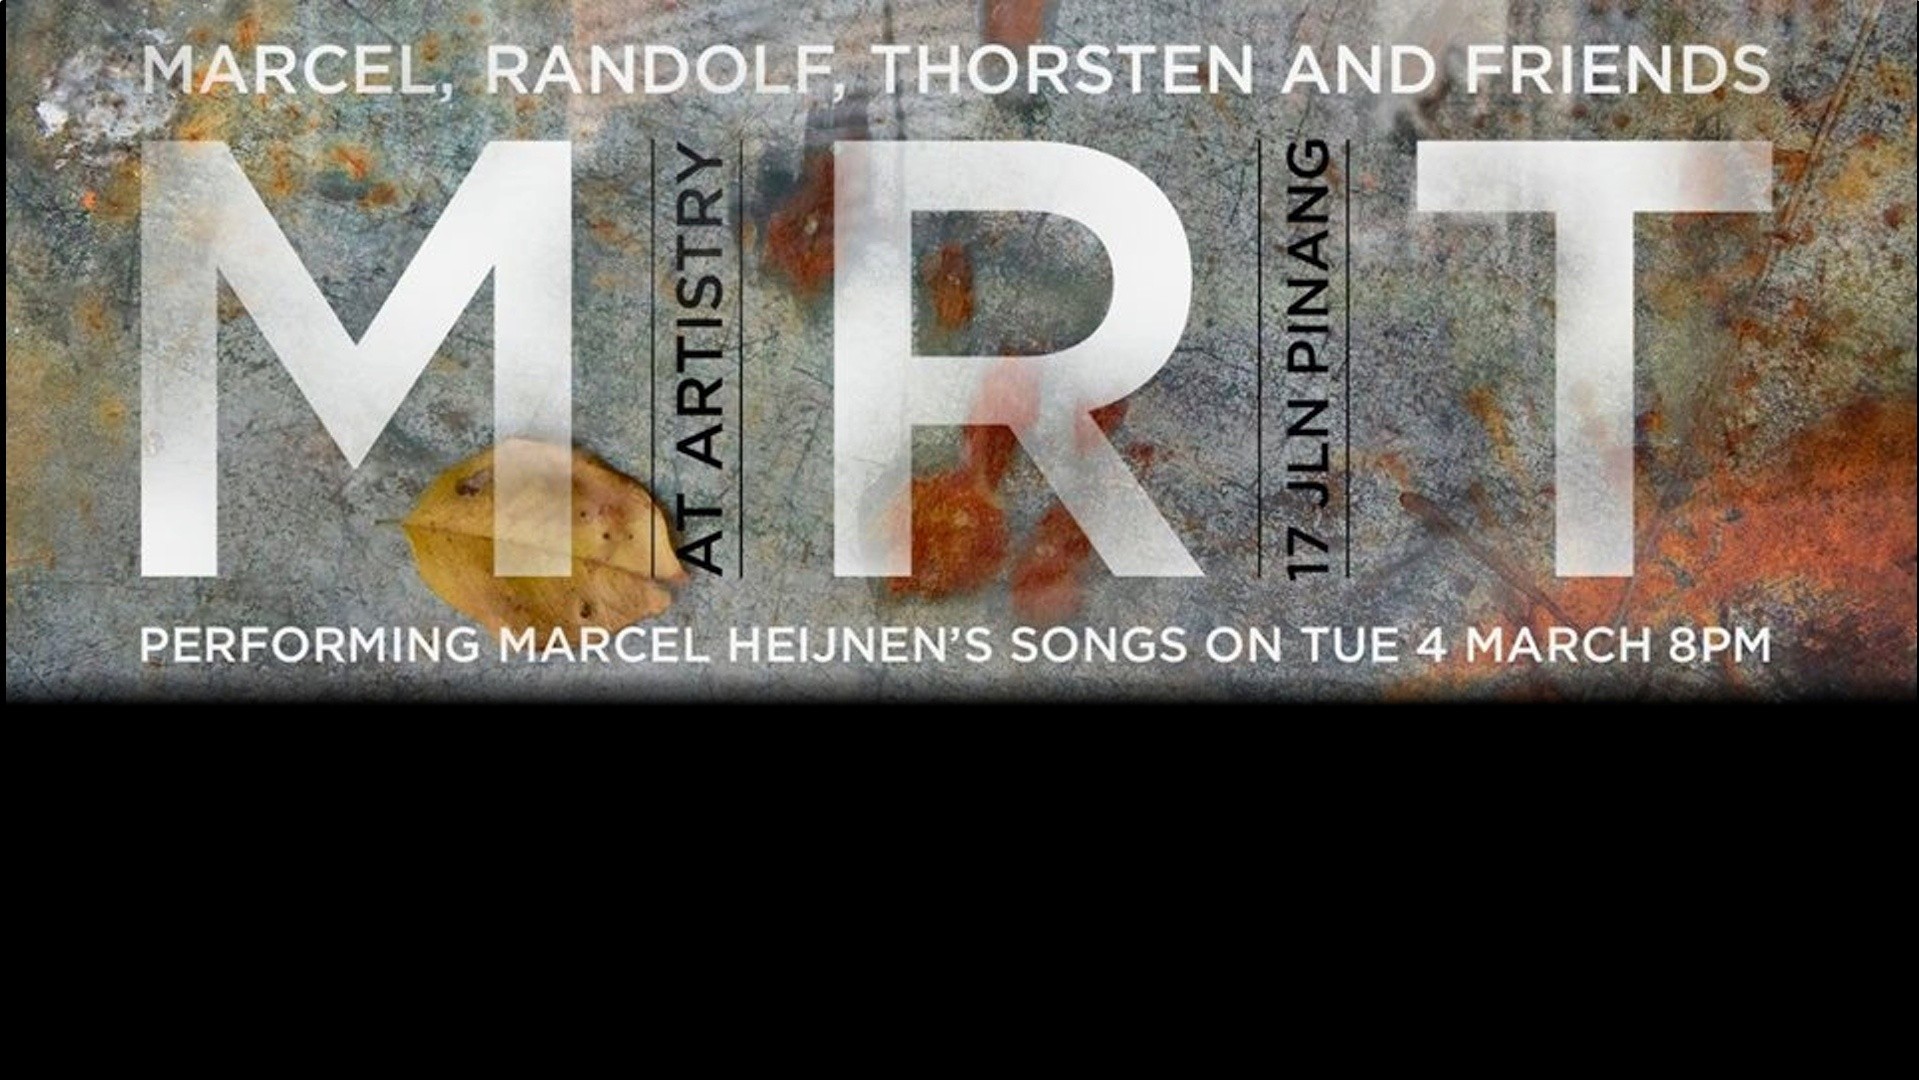 Marcel, Randolf, Thorsten & Friends